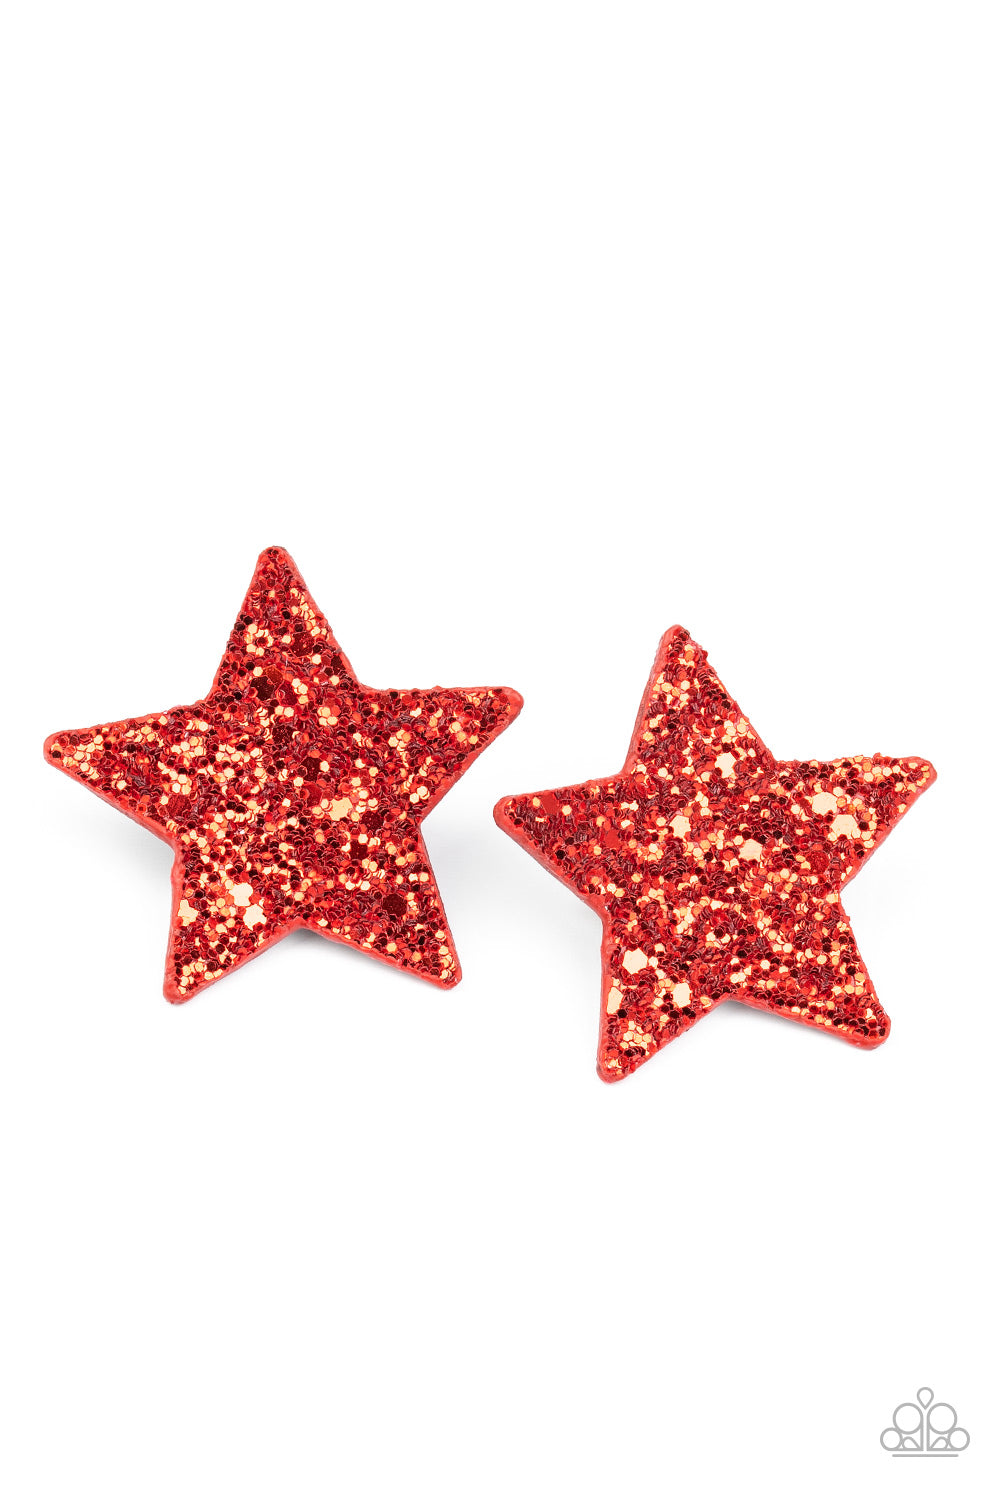 Star Spangled Superstar - Red